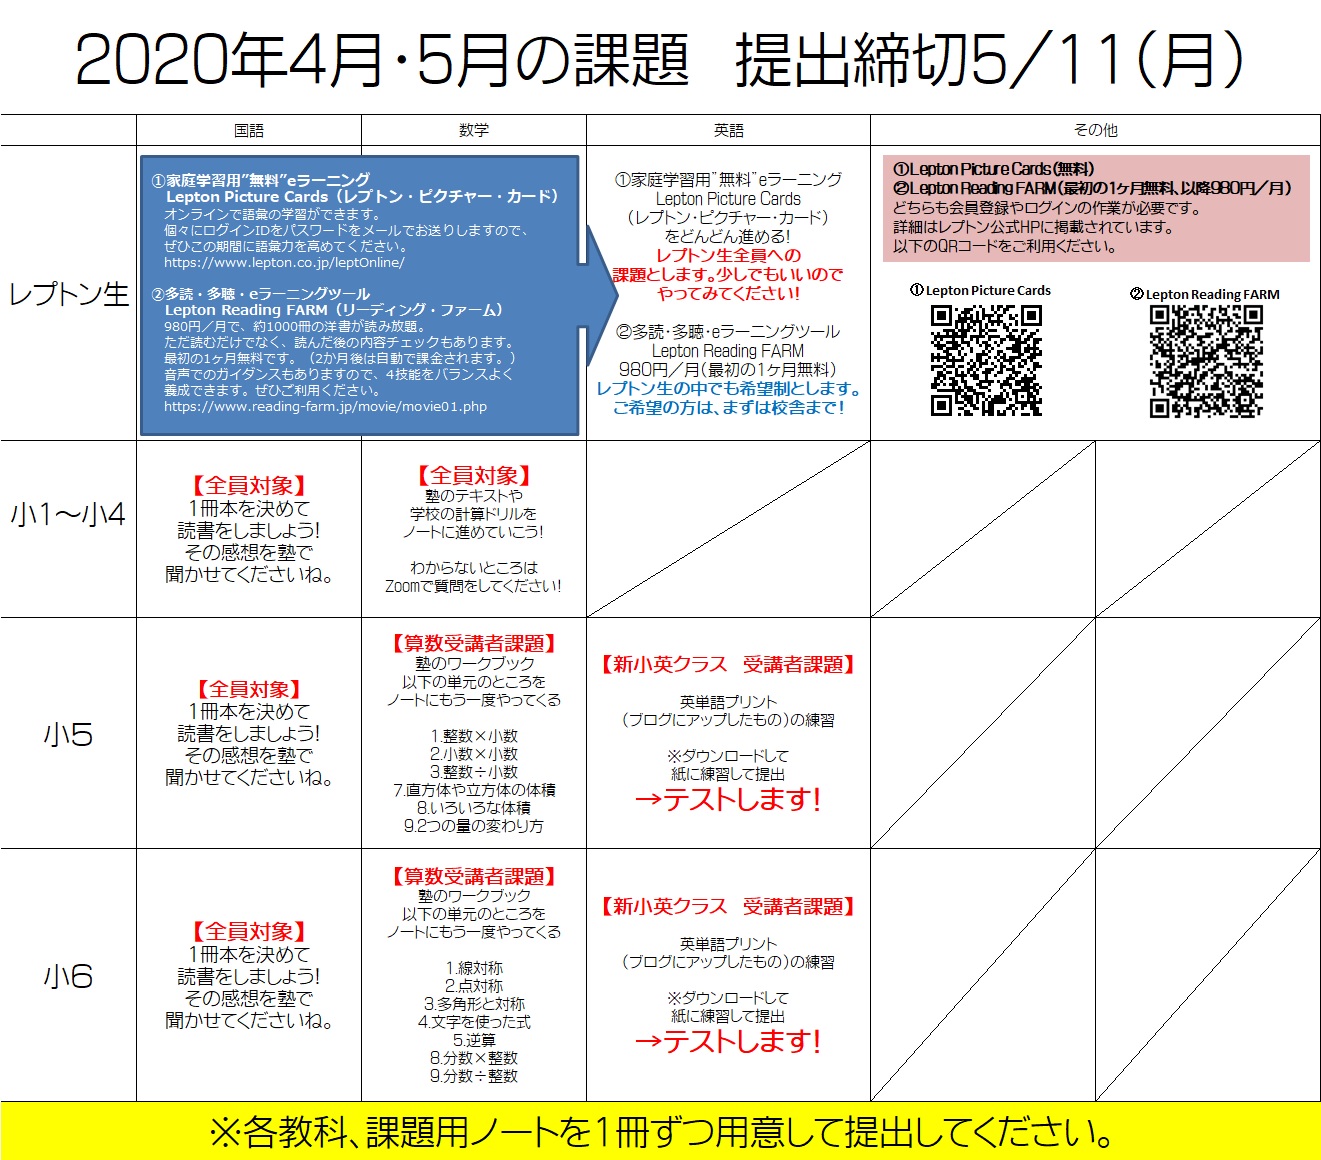 2020-4-5-kadai-shou